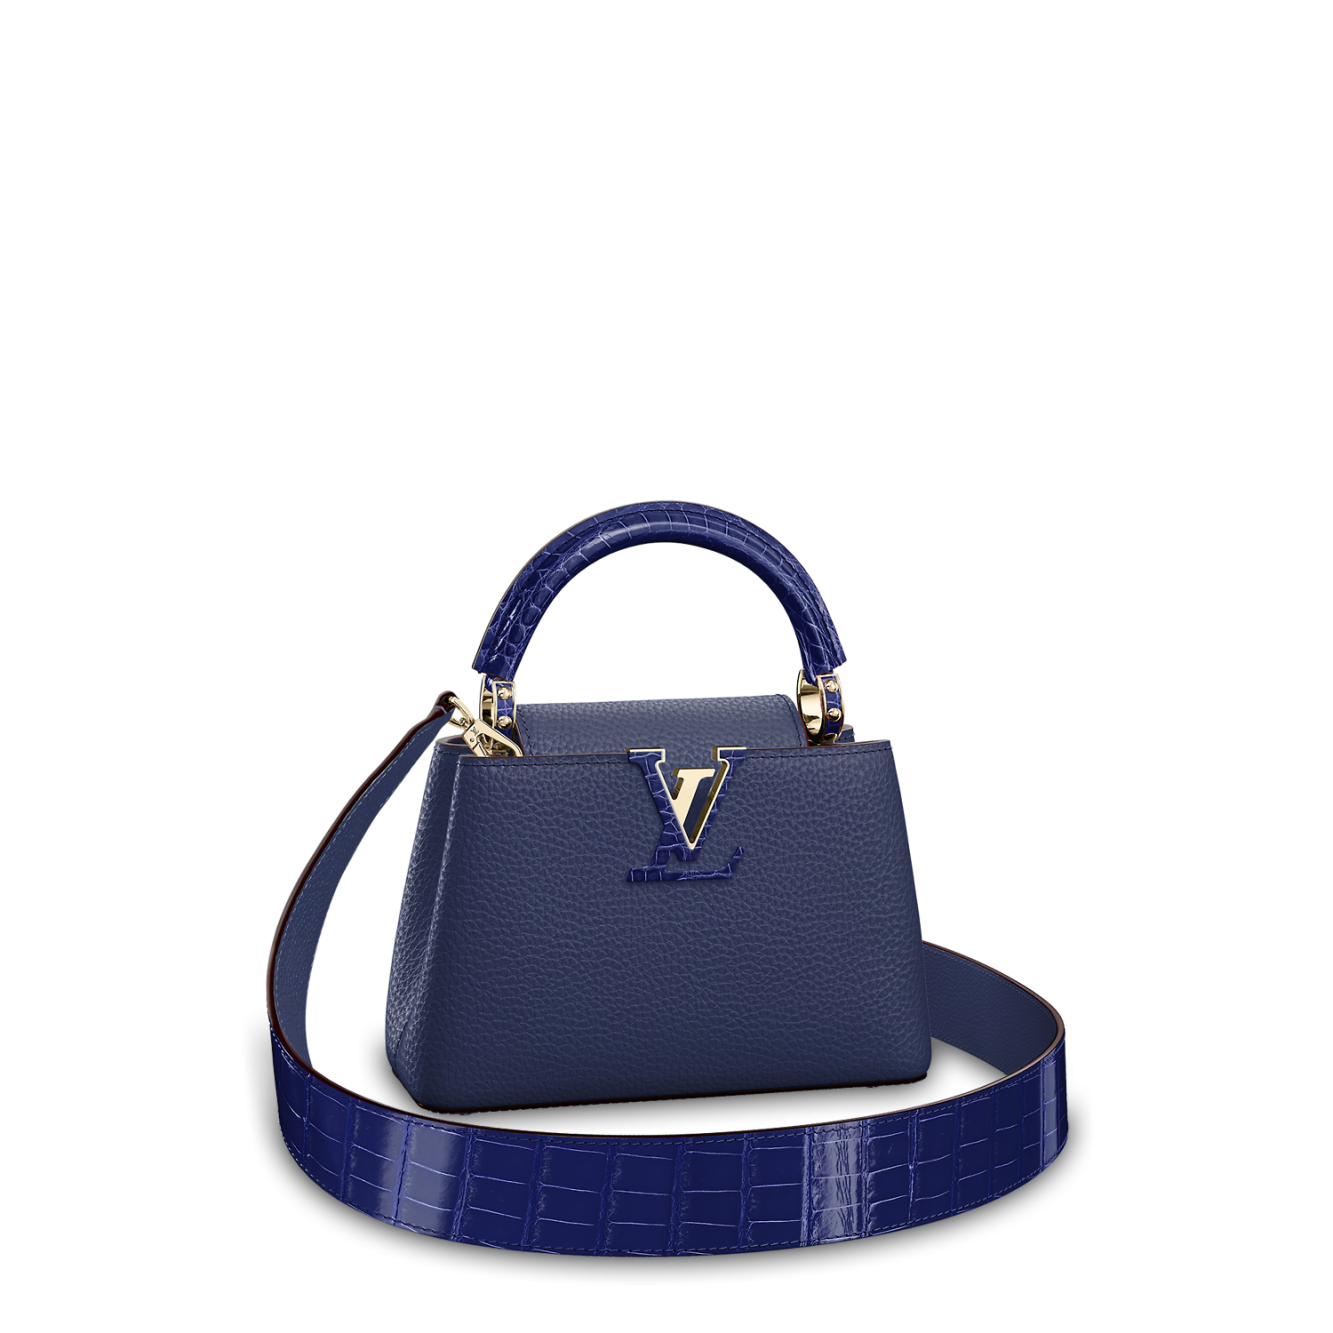 Buy Luxury Louis Vuitton Capucines Handbag Online